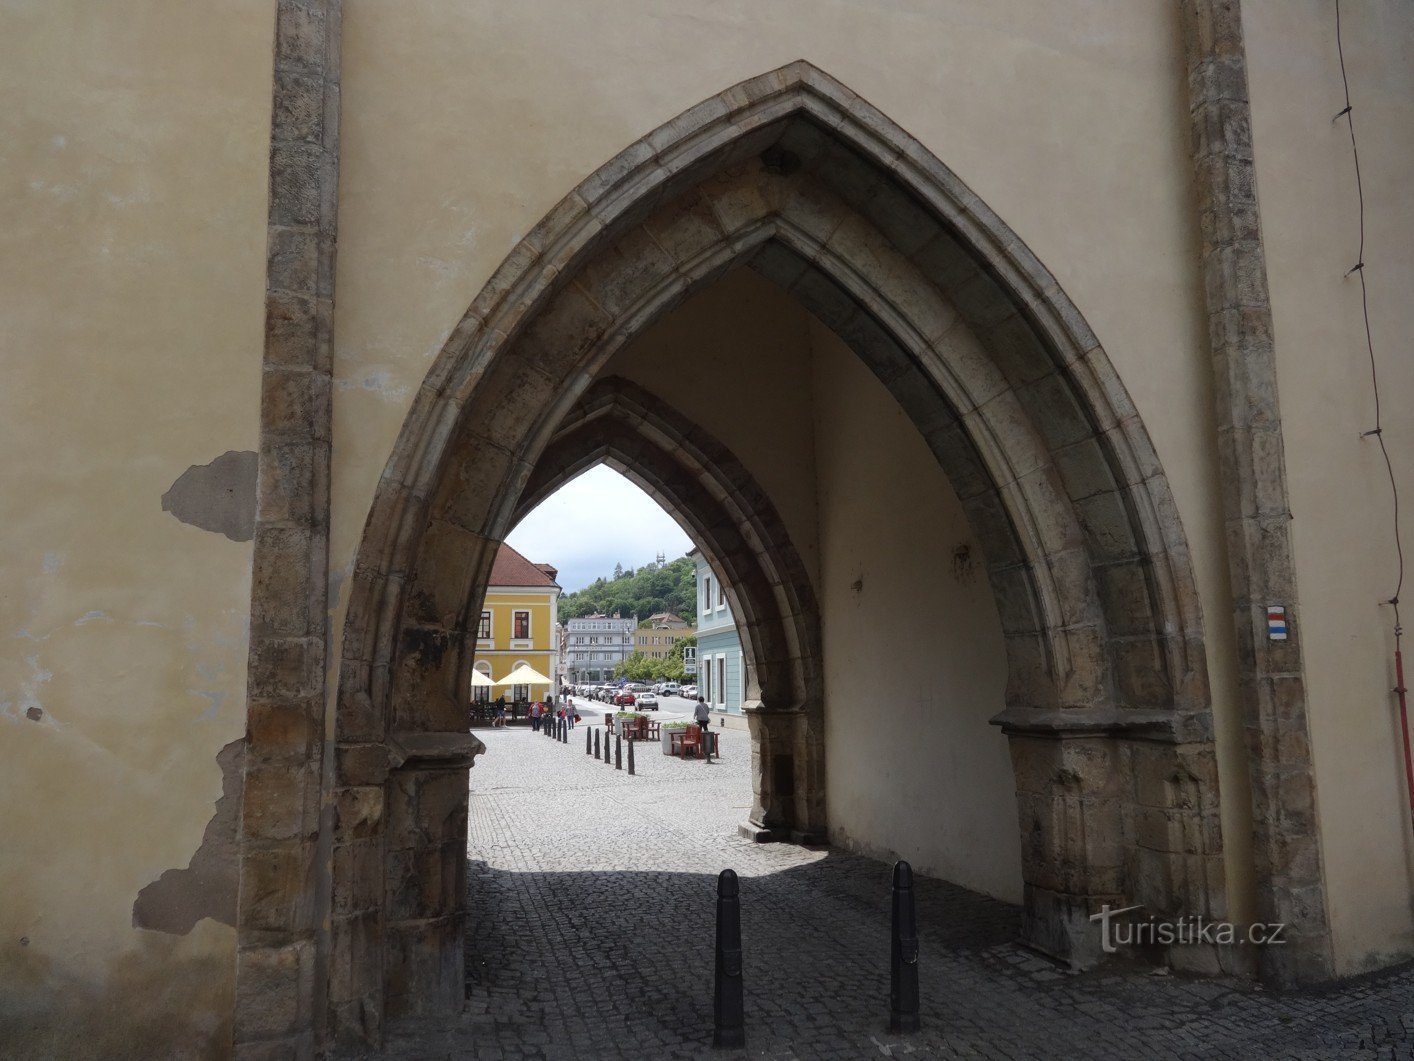 Beroun and the Prague Gate under Husový náměstí